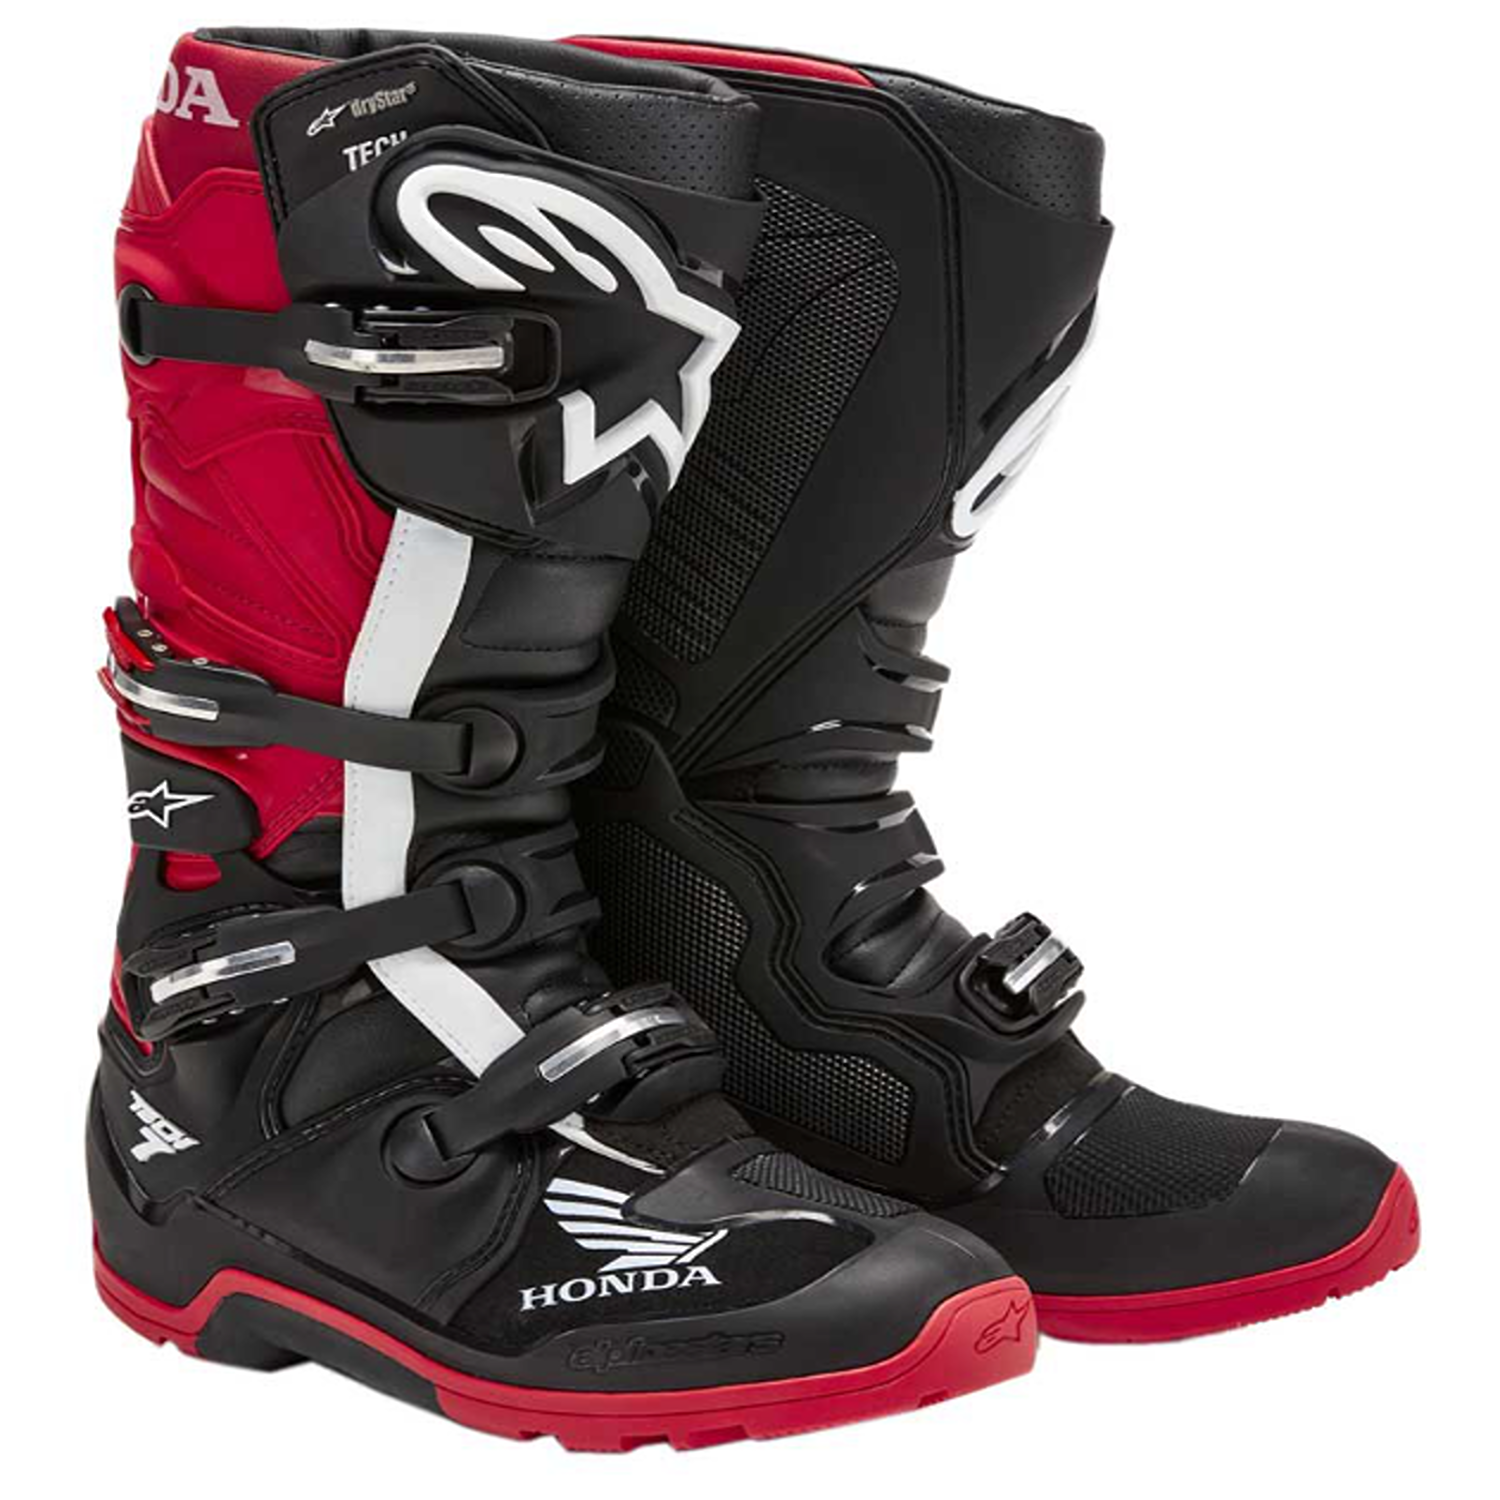 Image of Alpinestars Honda Tech 7 Enduro Drystar Boots Black Bright Red Größe US 6